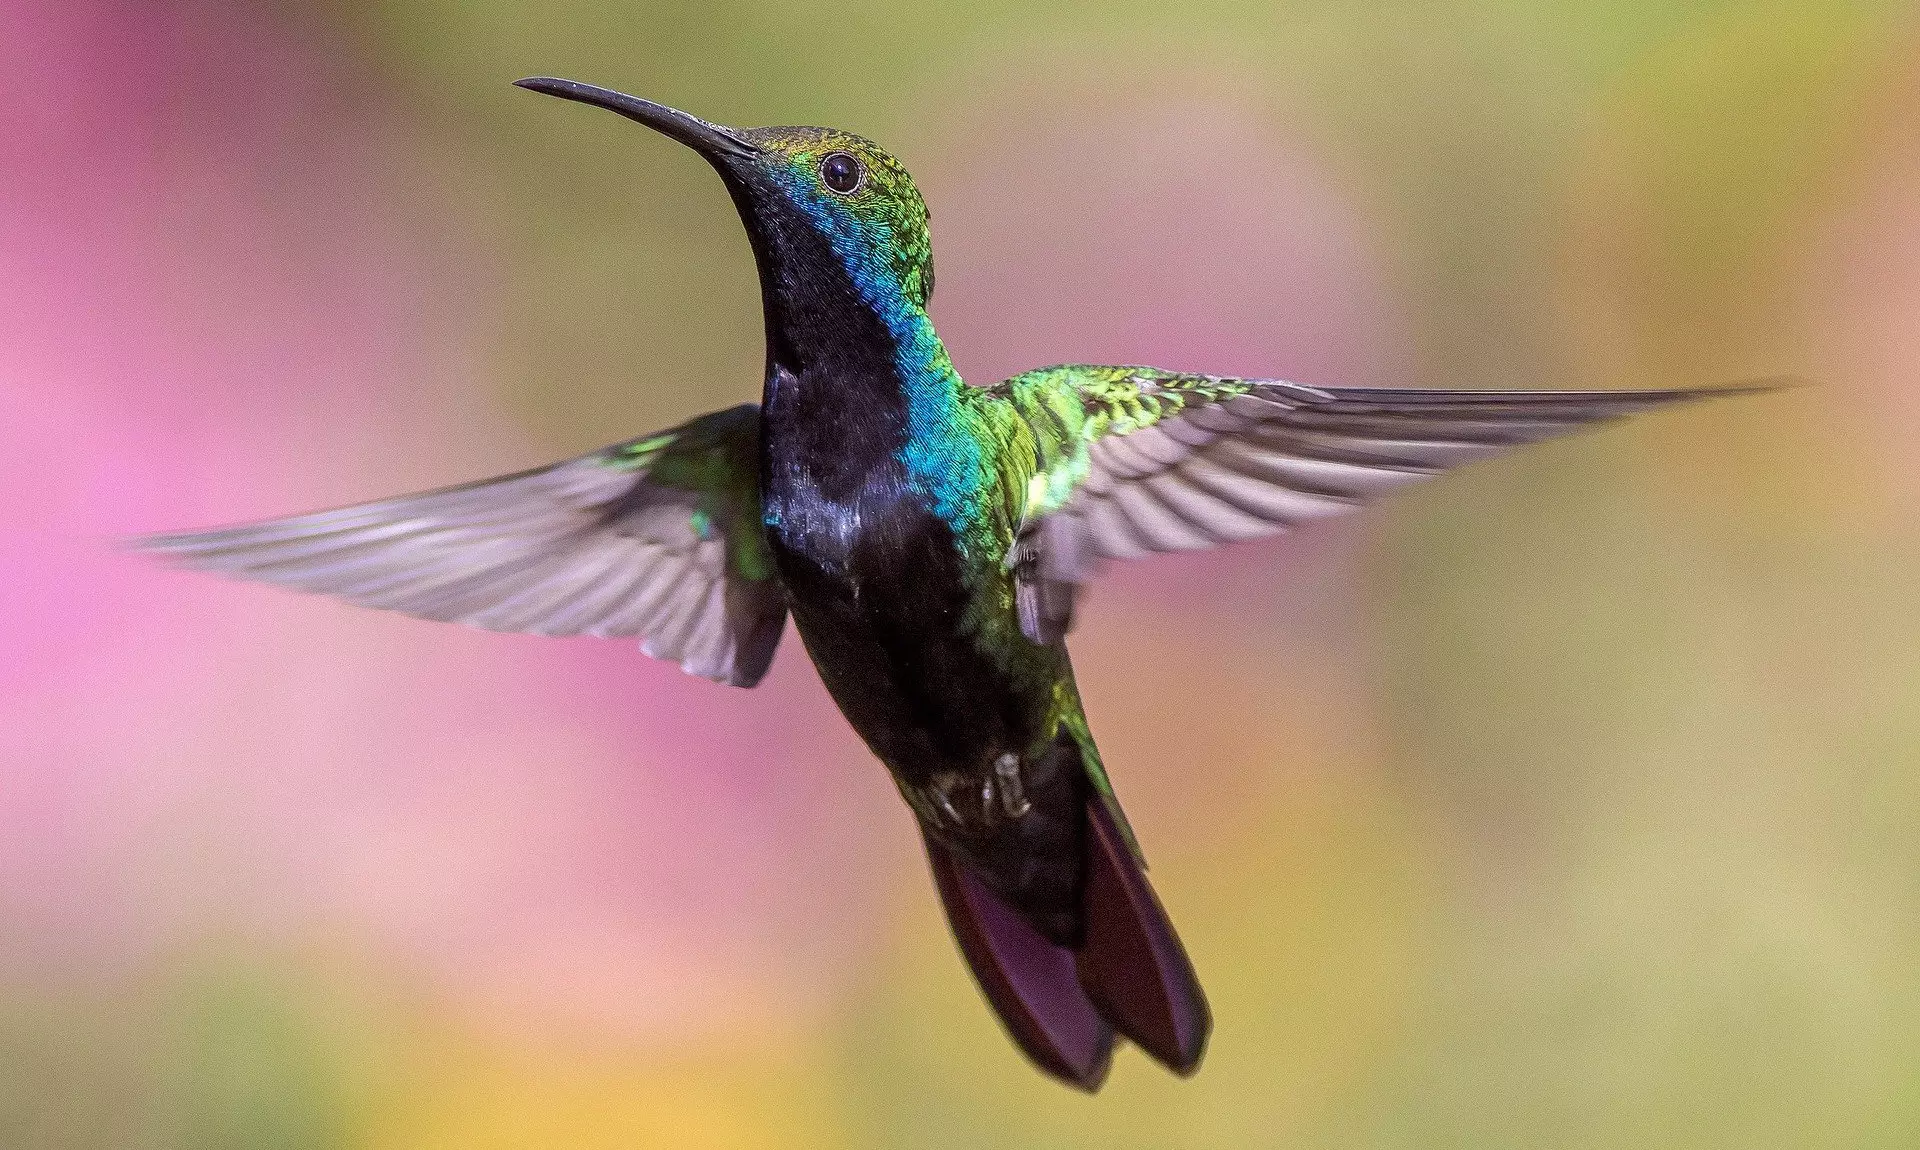 Elképesztő mértékben le tudják csökkenteni testhőmérsékletüket a kolibrik